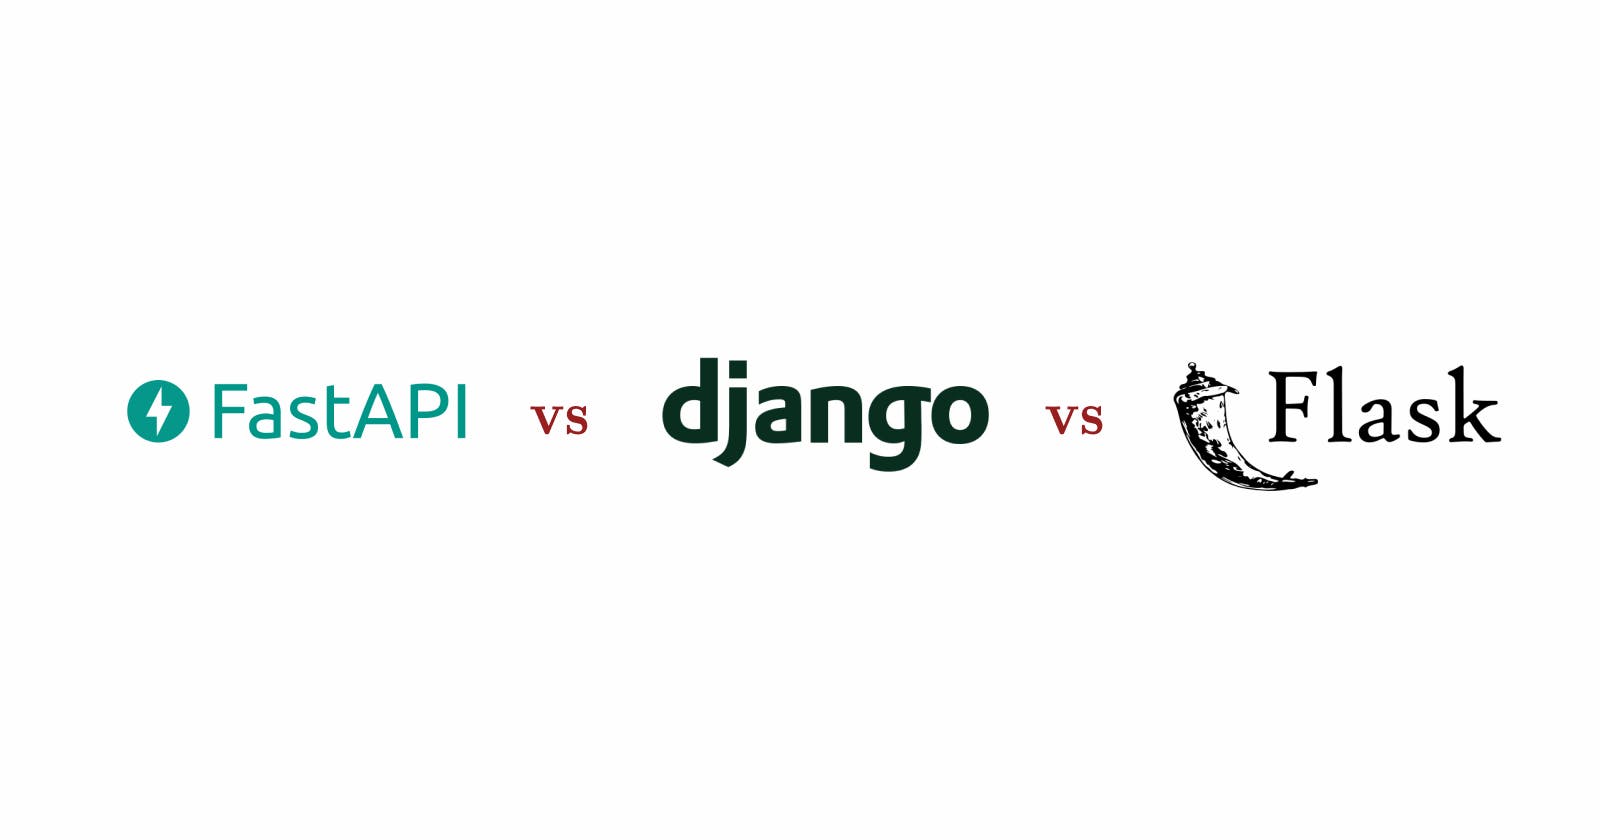 FastAPI vs Django vs Flask, qué framework aprender?